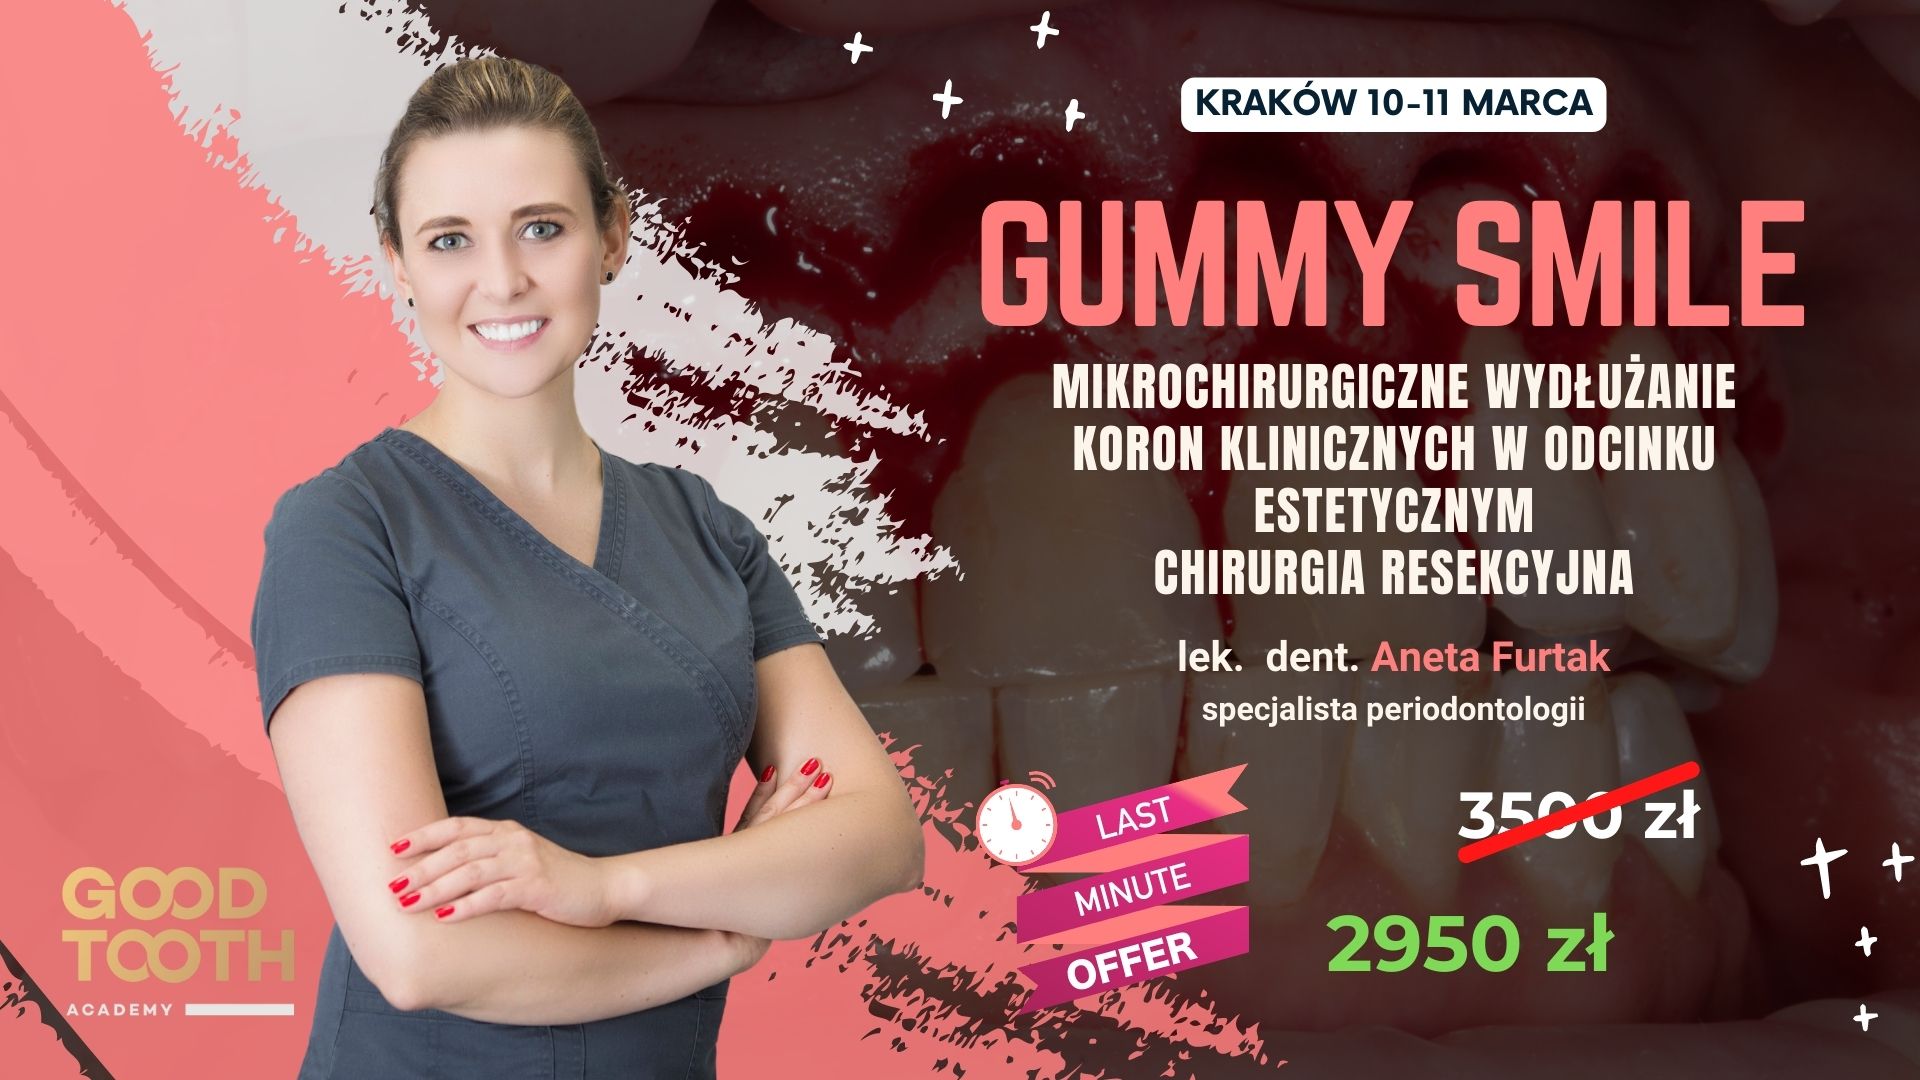 Kurs: Gummy Smile – mikrochirurgiczne wydłużanie koron klinicznych w odcinku estetycznym, chirurgia resekcyjna